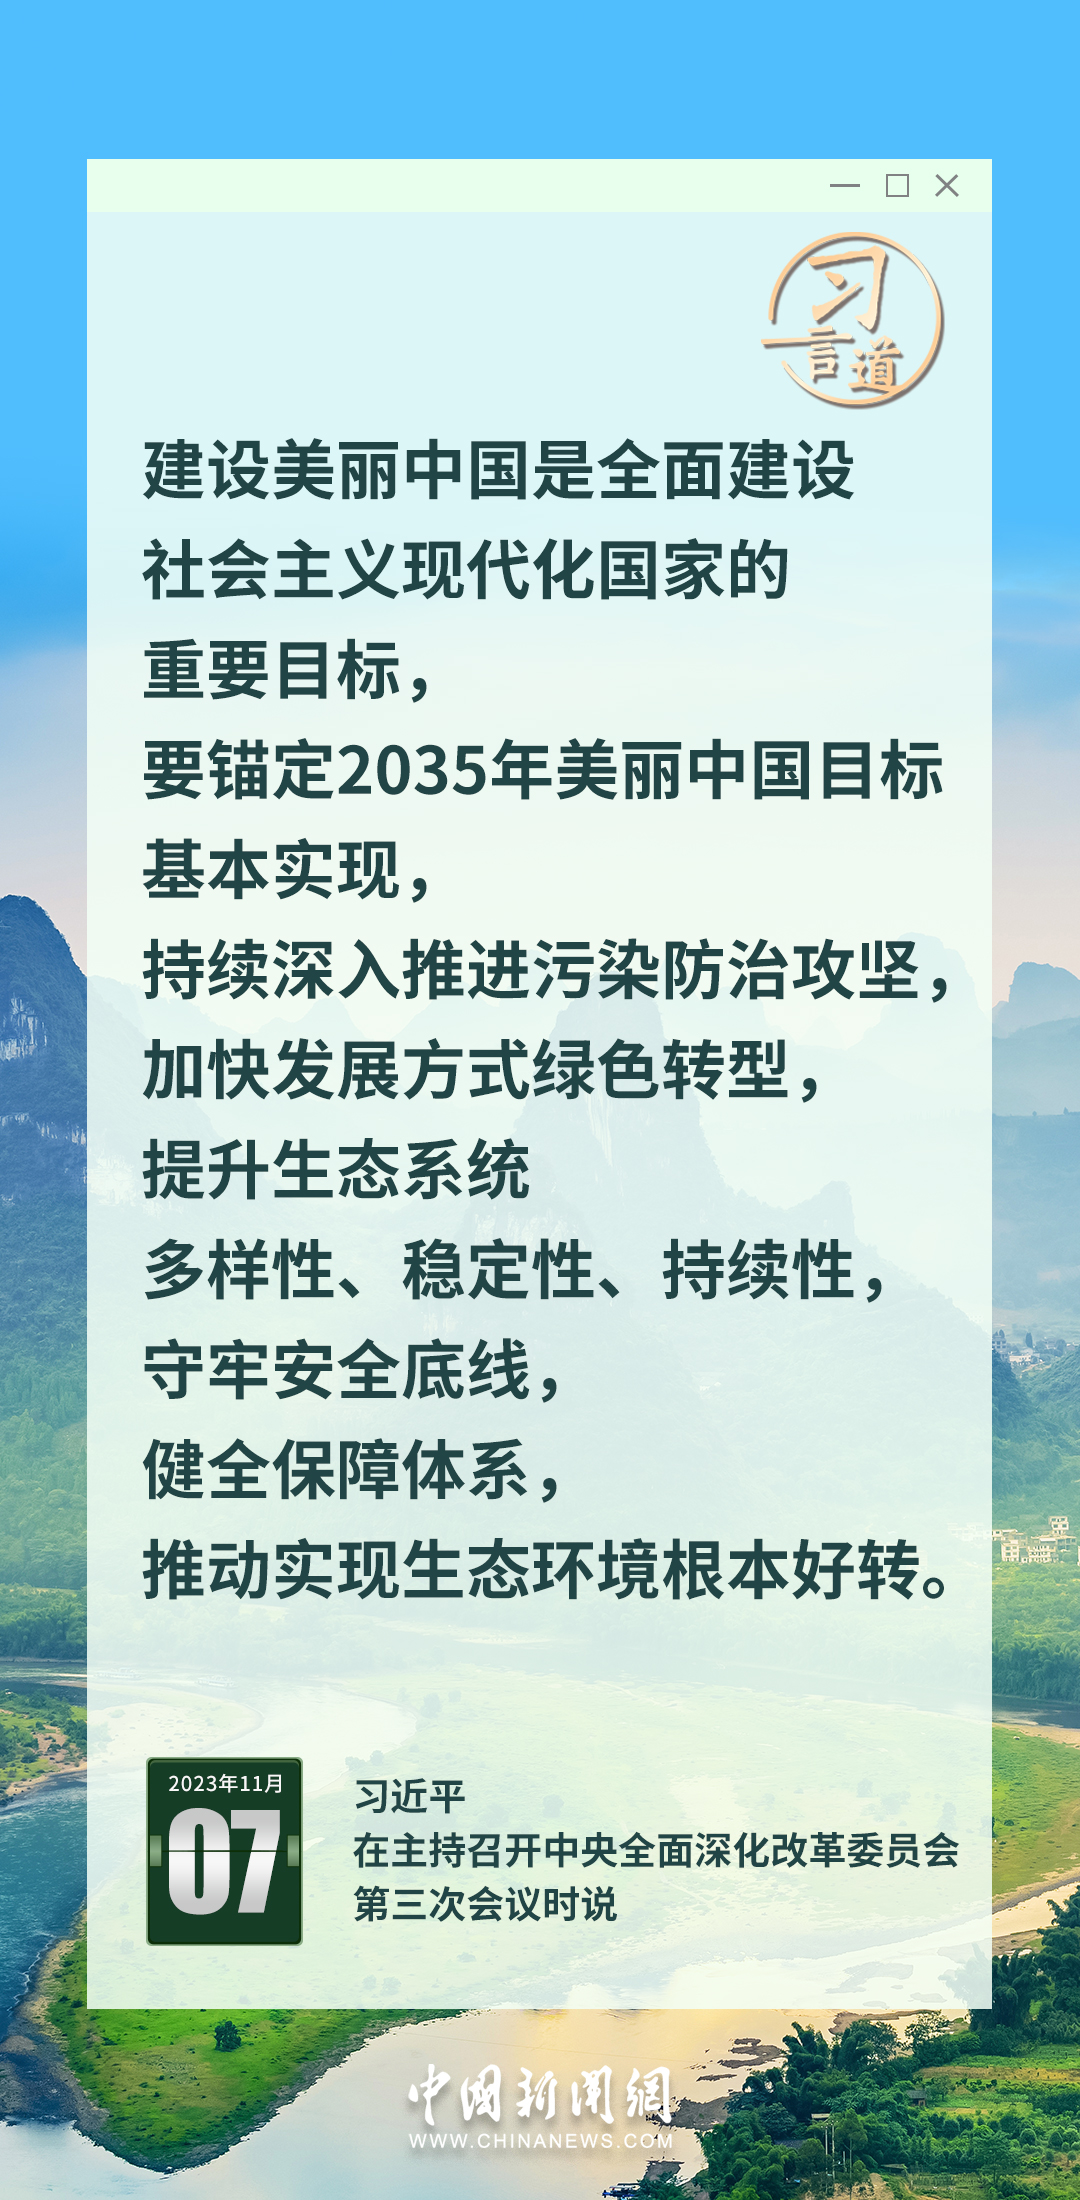 習言道｜錨定2035年美麗中國目標基本實現